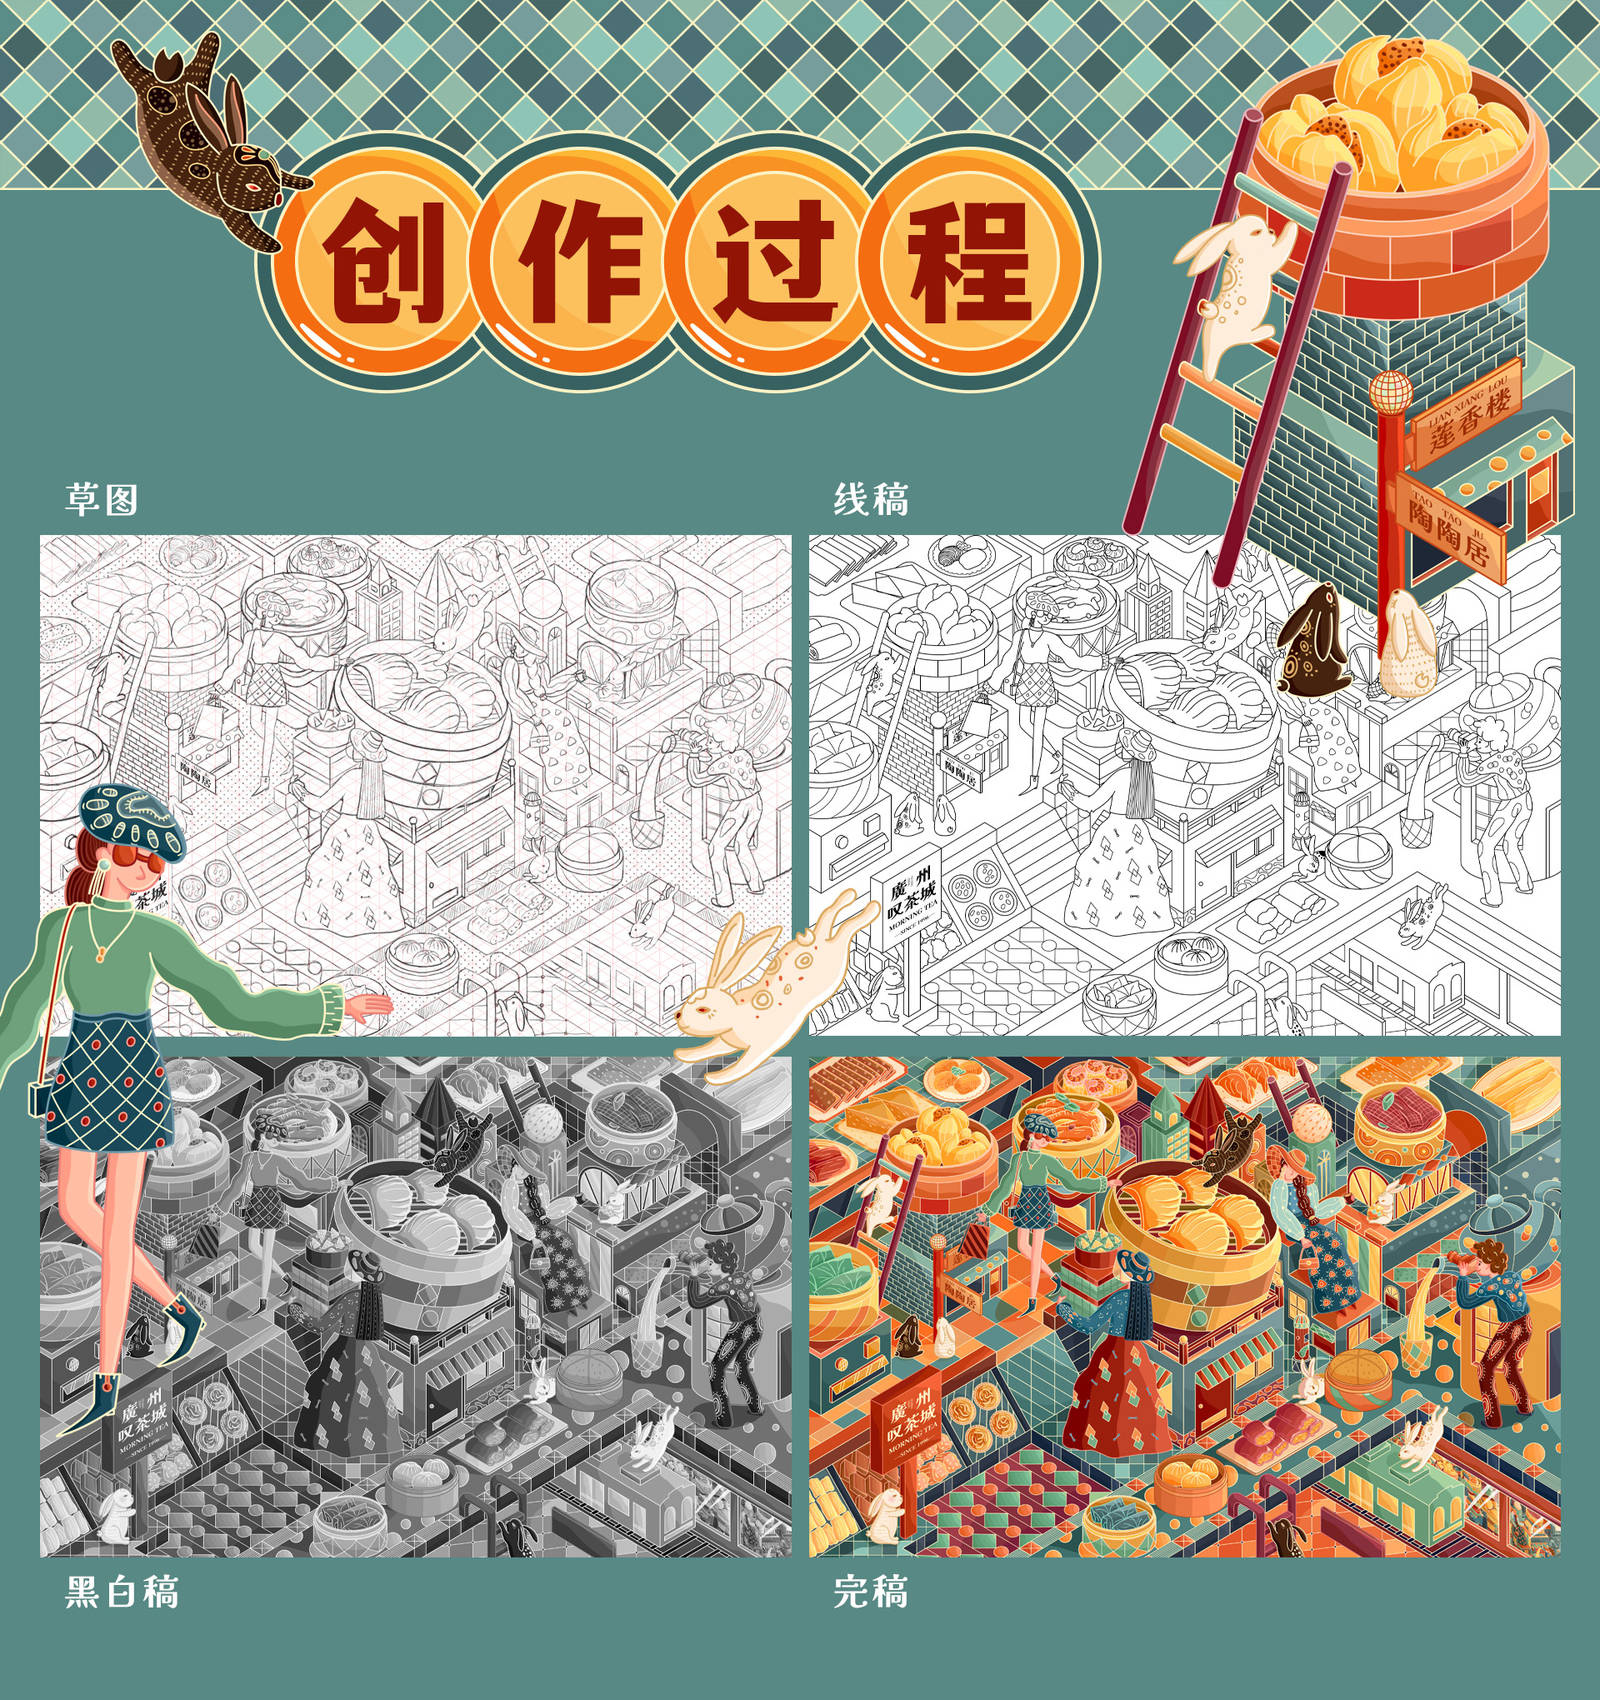 广州叹茶城KV品牌餐饮插画设计-第1张